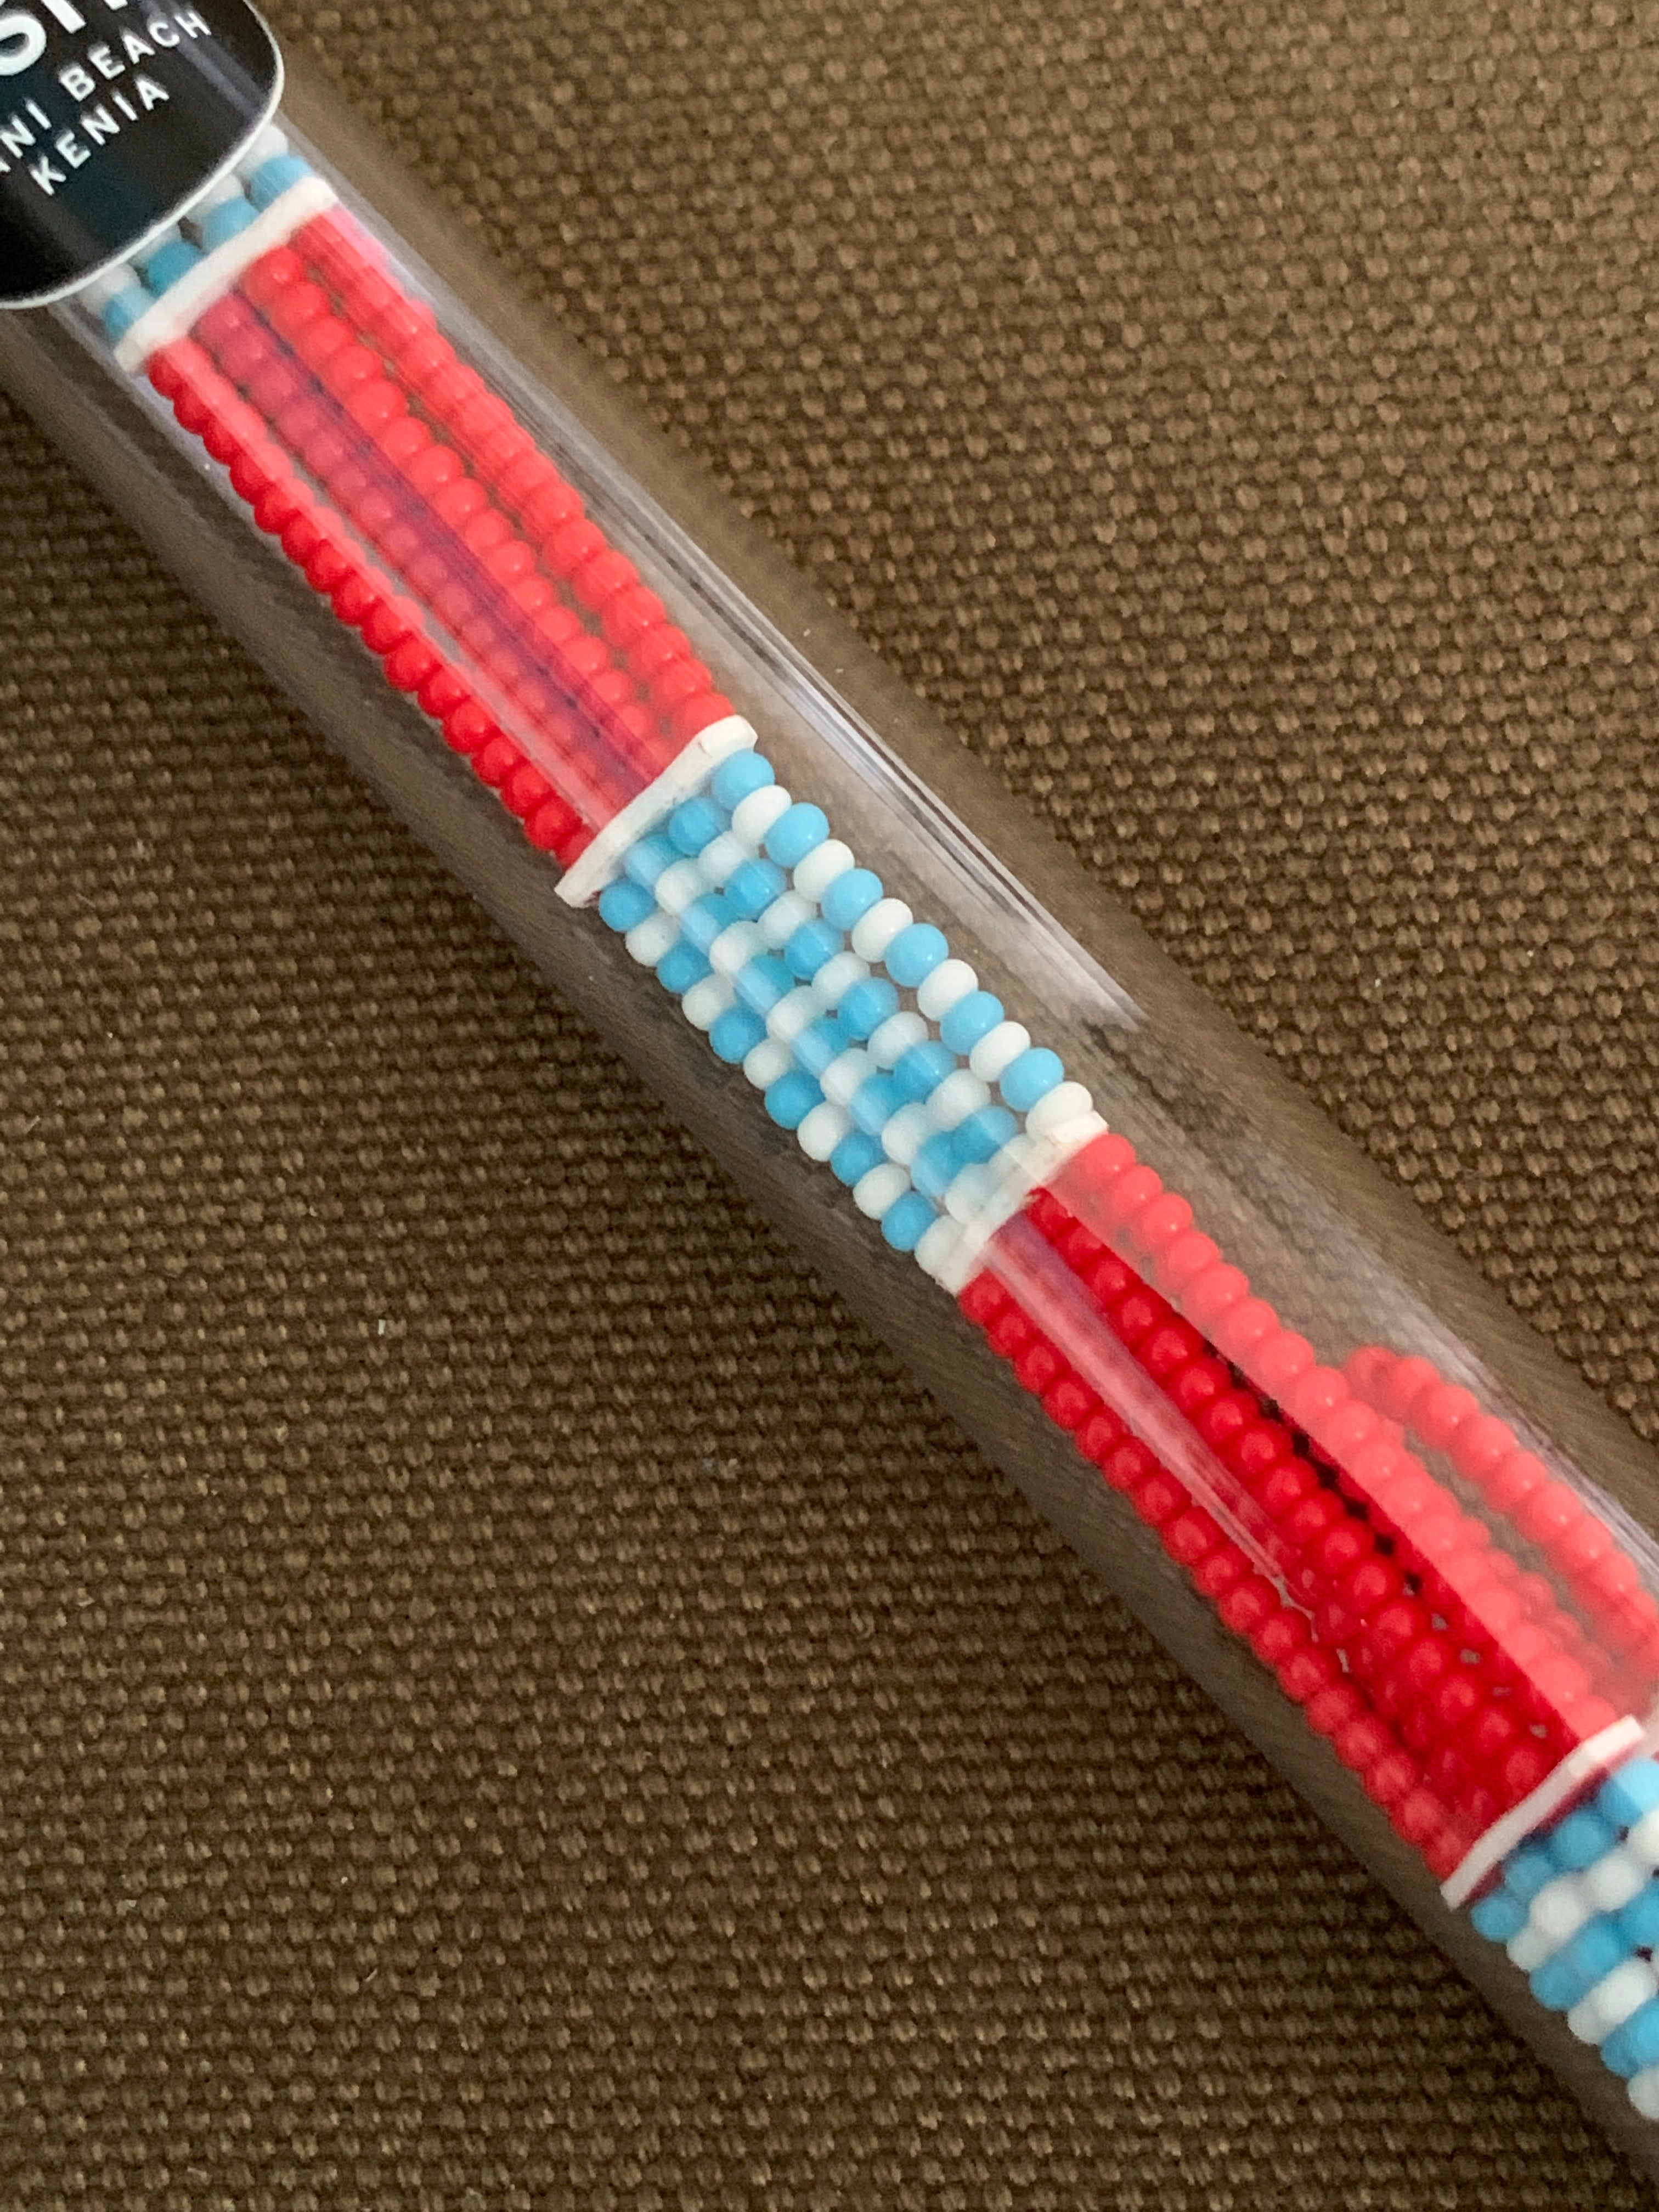 Massai-Armband mit Knopf / red with white/light blue